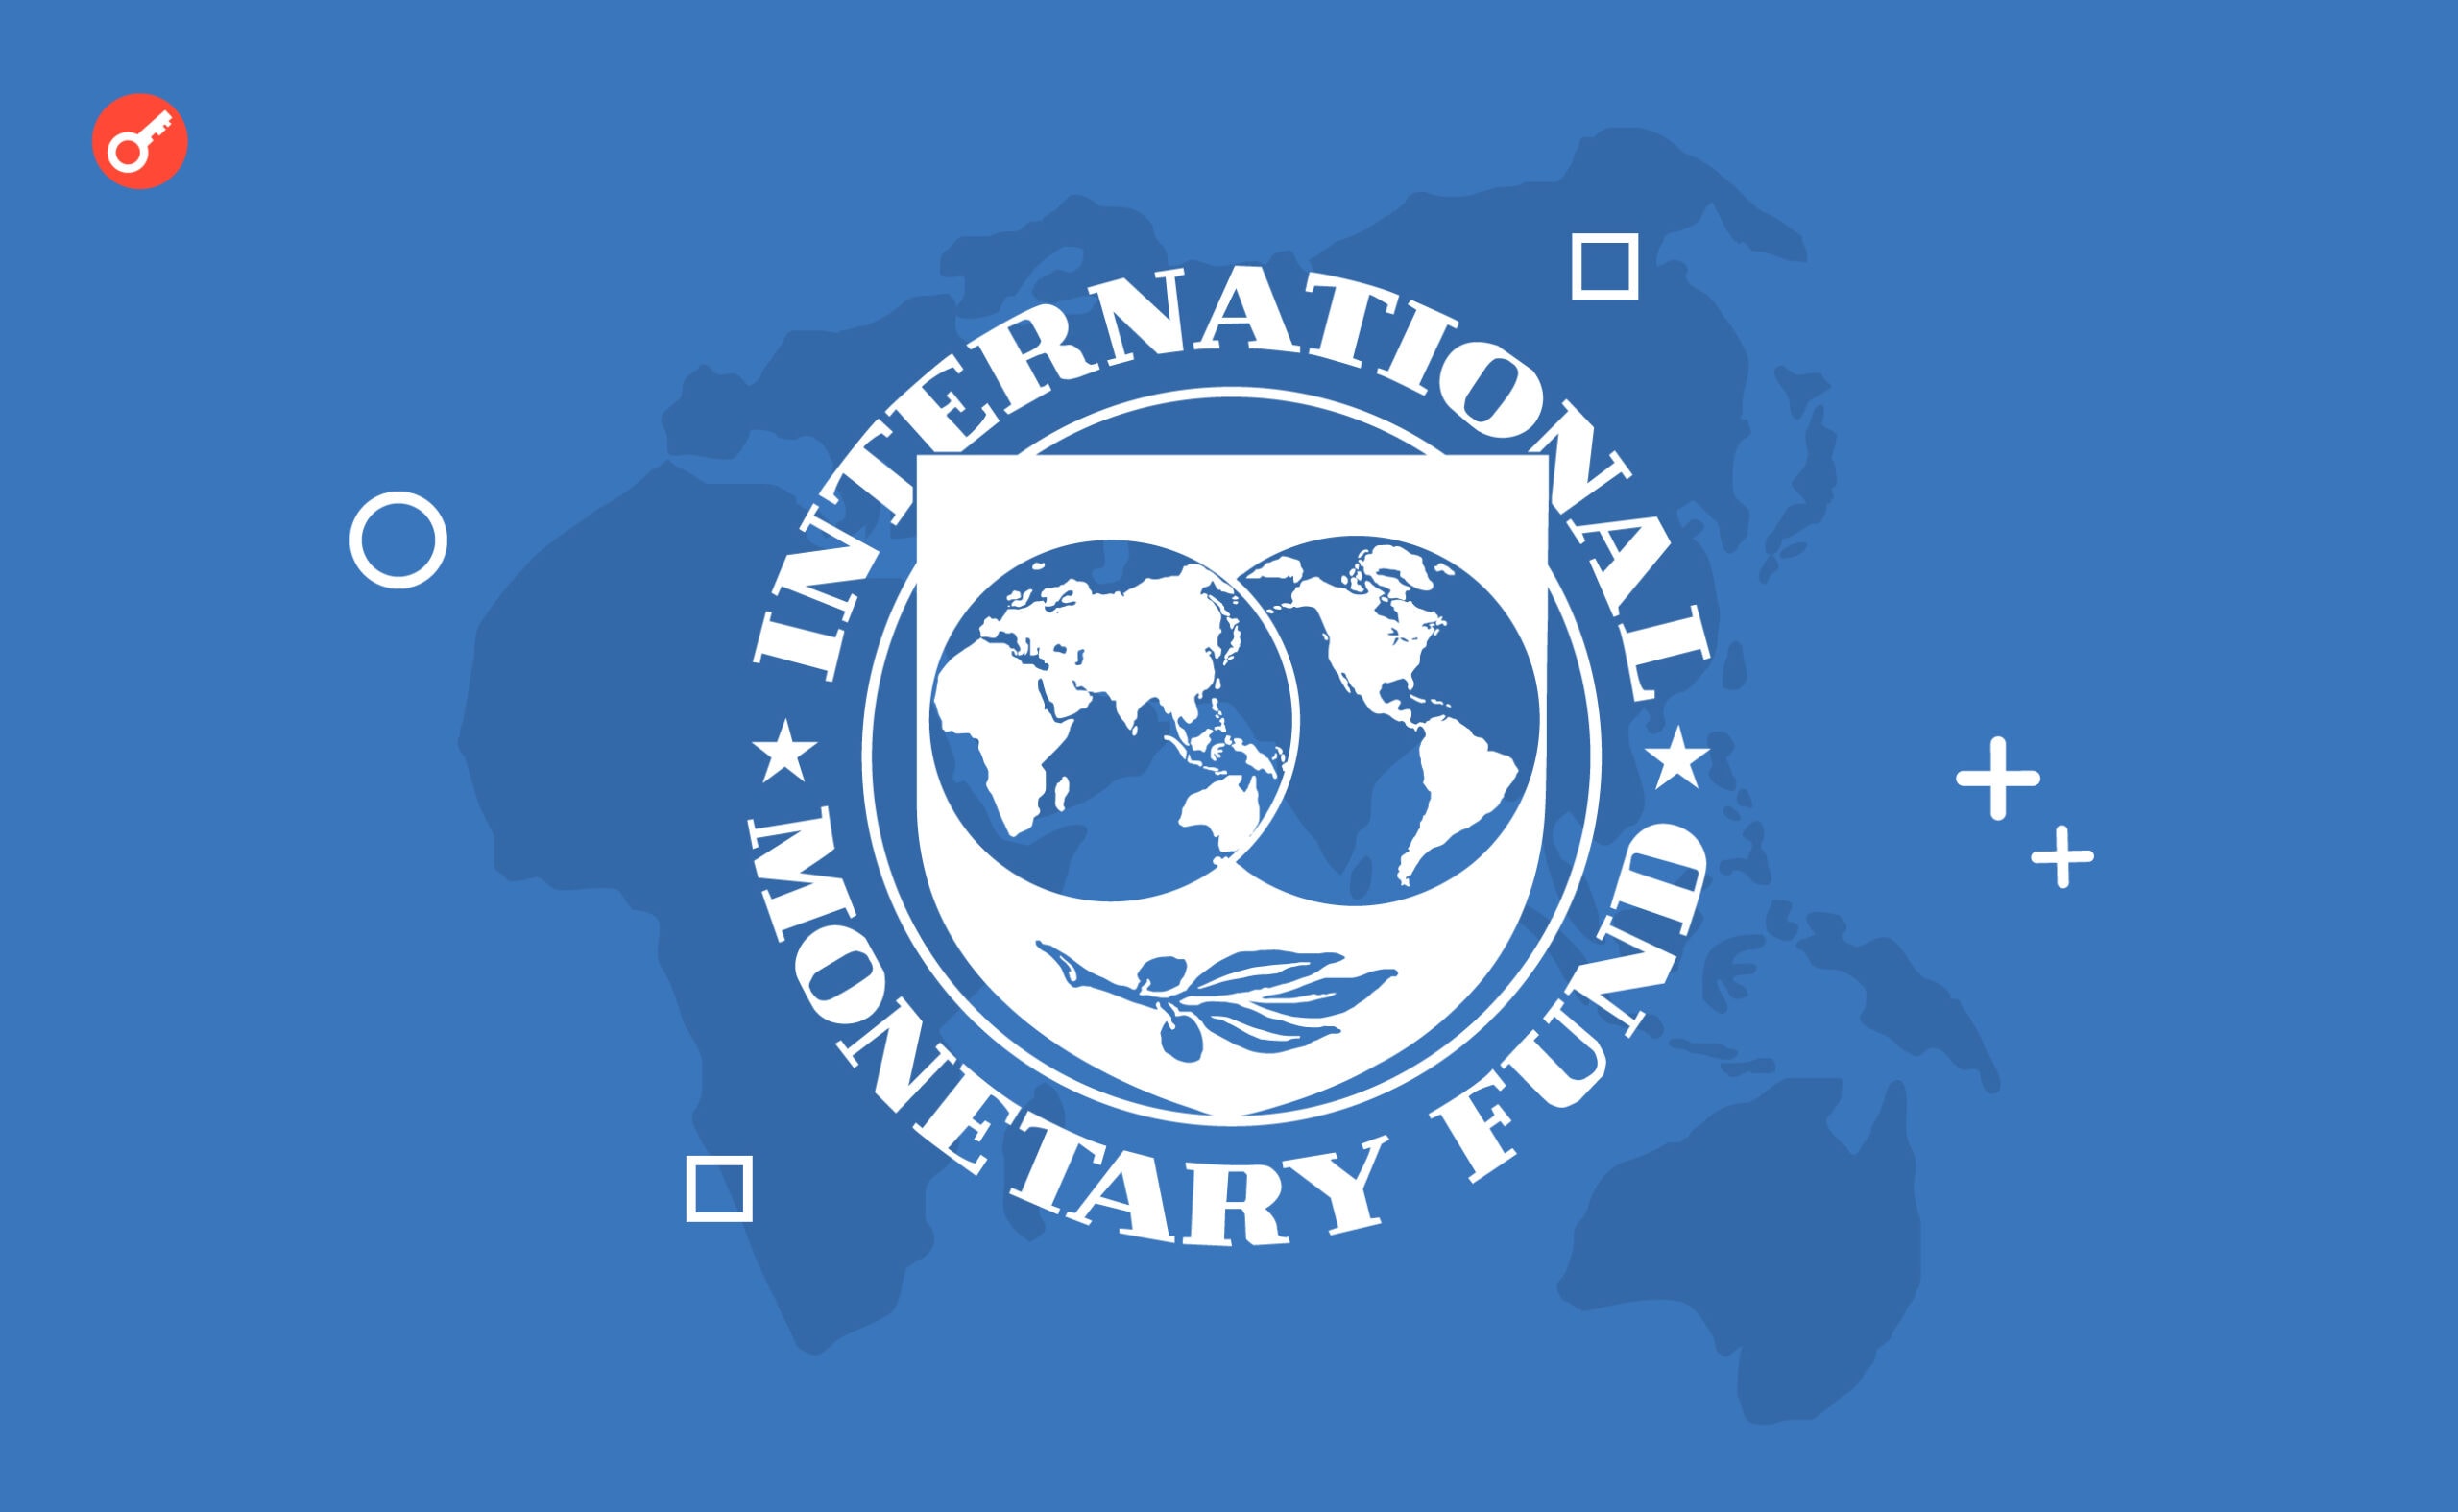 Міжнародний валютний фонд закликає до регулювання криптовалют. Головний колаж новини.